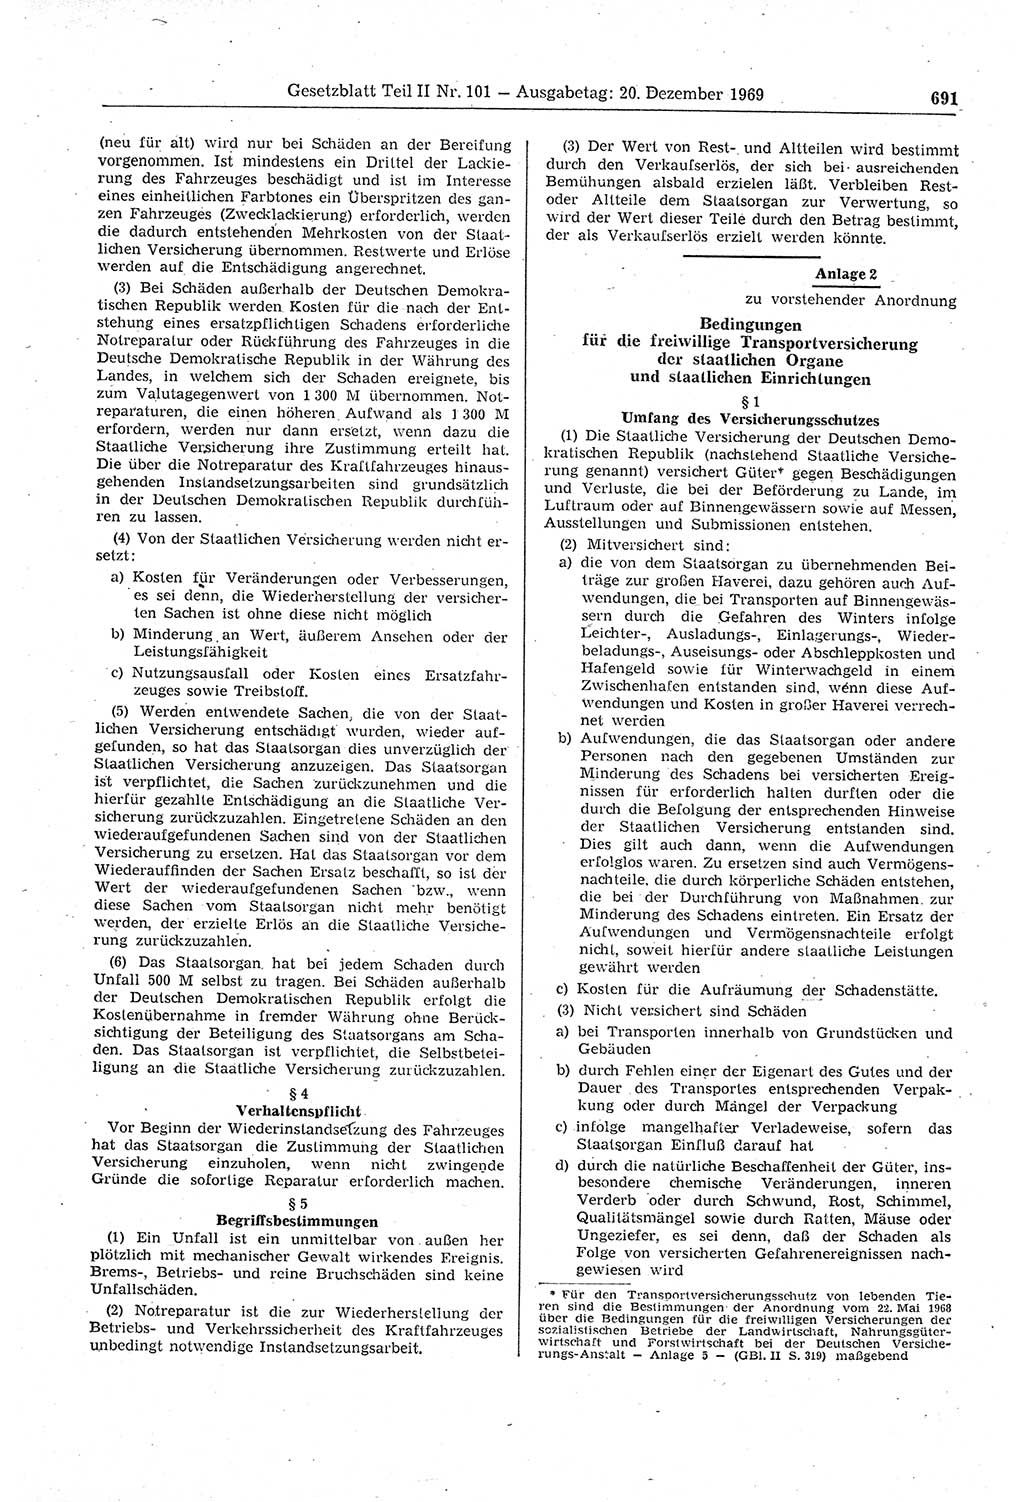 Gesetzblatt (GBl.) der Deutschen Demokratischen Republik (DDR) Teil ⅠⅠ 1969, Seite 691 (GBl. DDR ⅠⅠ 1969, S. 691)